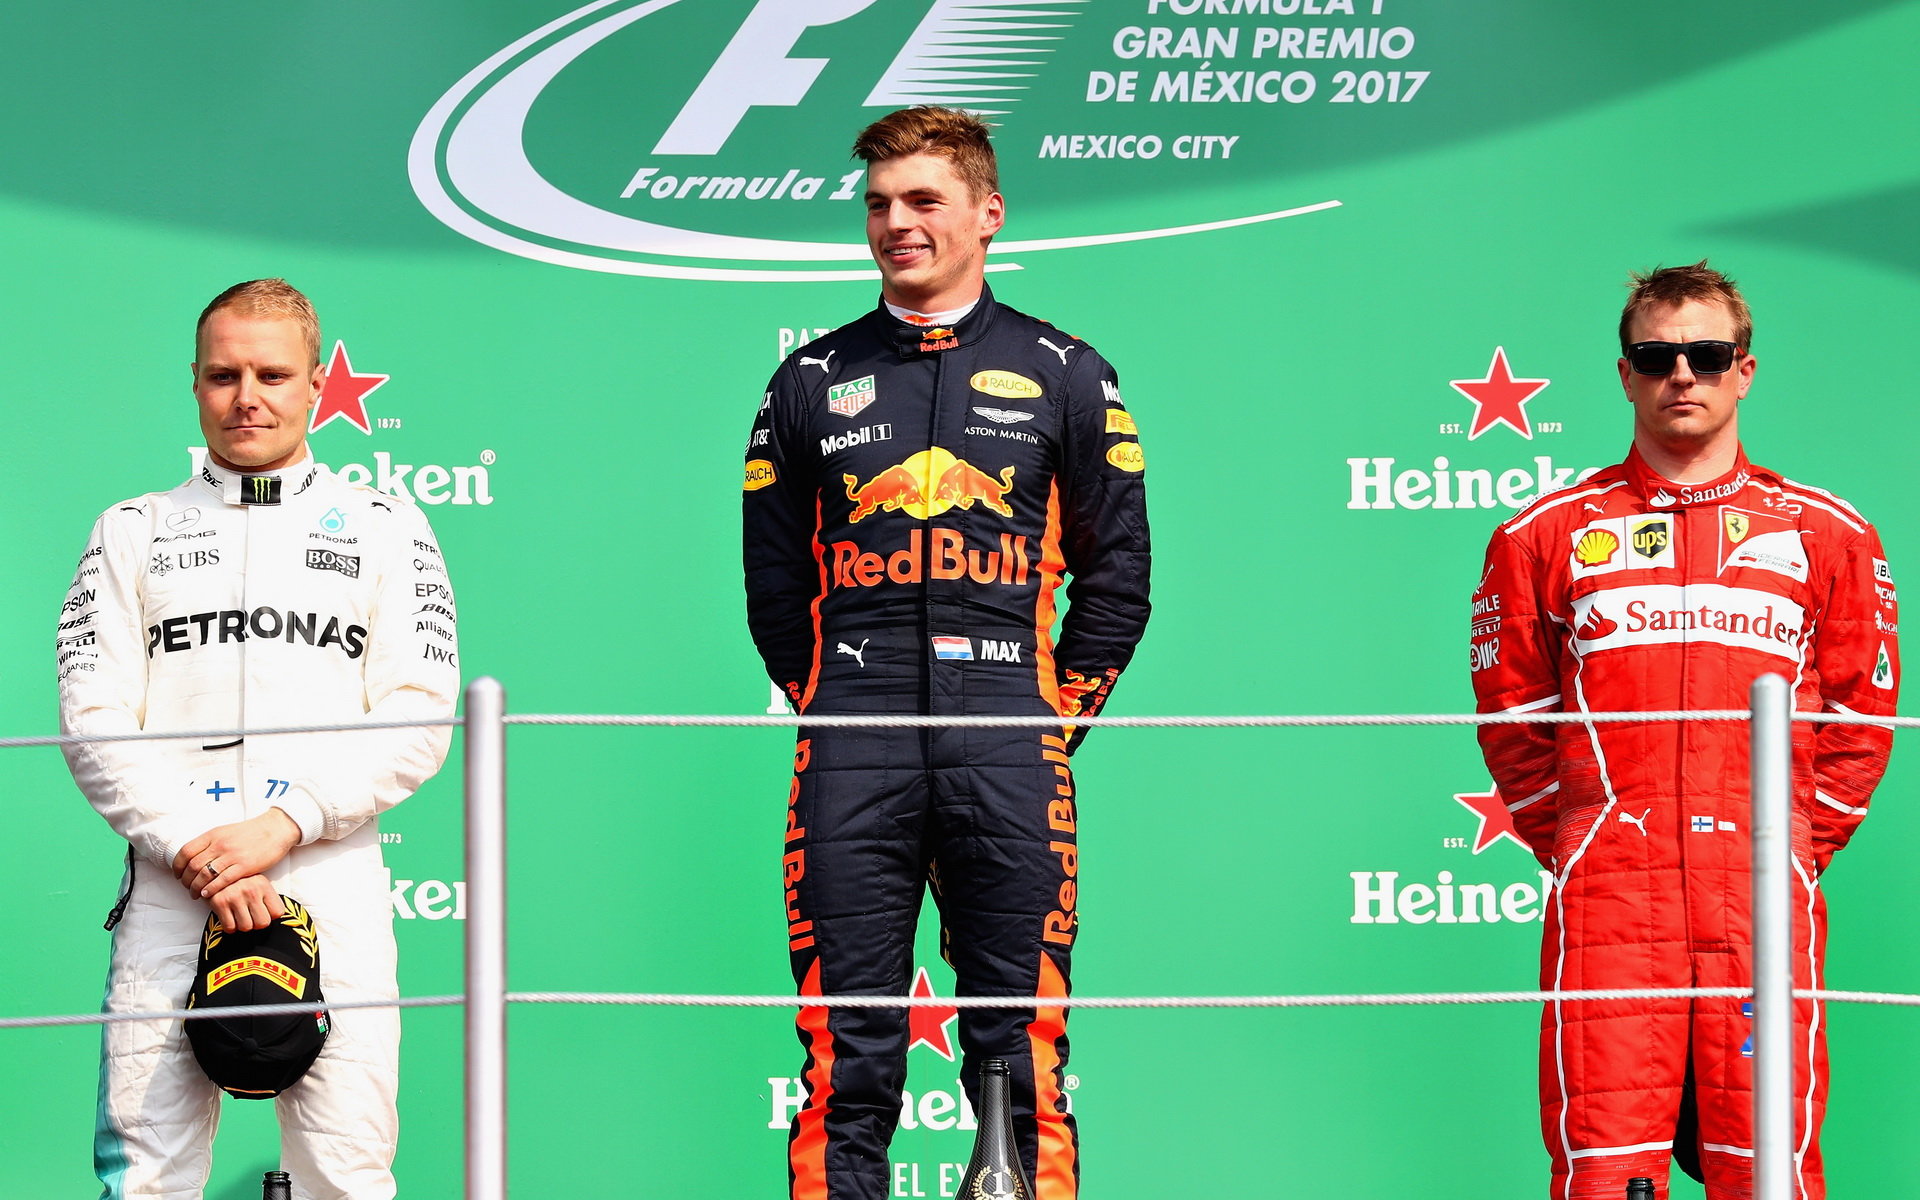 Max Verstappen loni v Mexiku na nejvyšším stupínku - dosáhne letos Red Bull stejného výsledku?